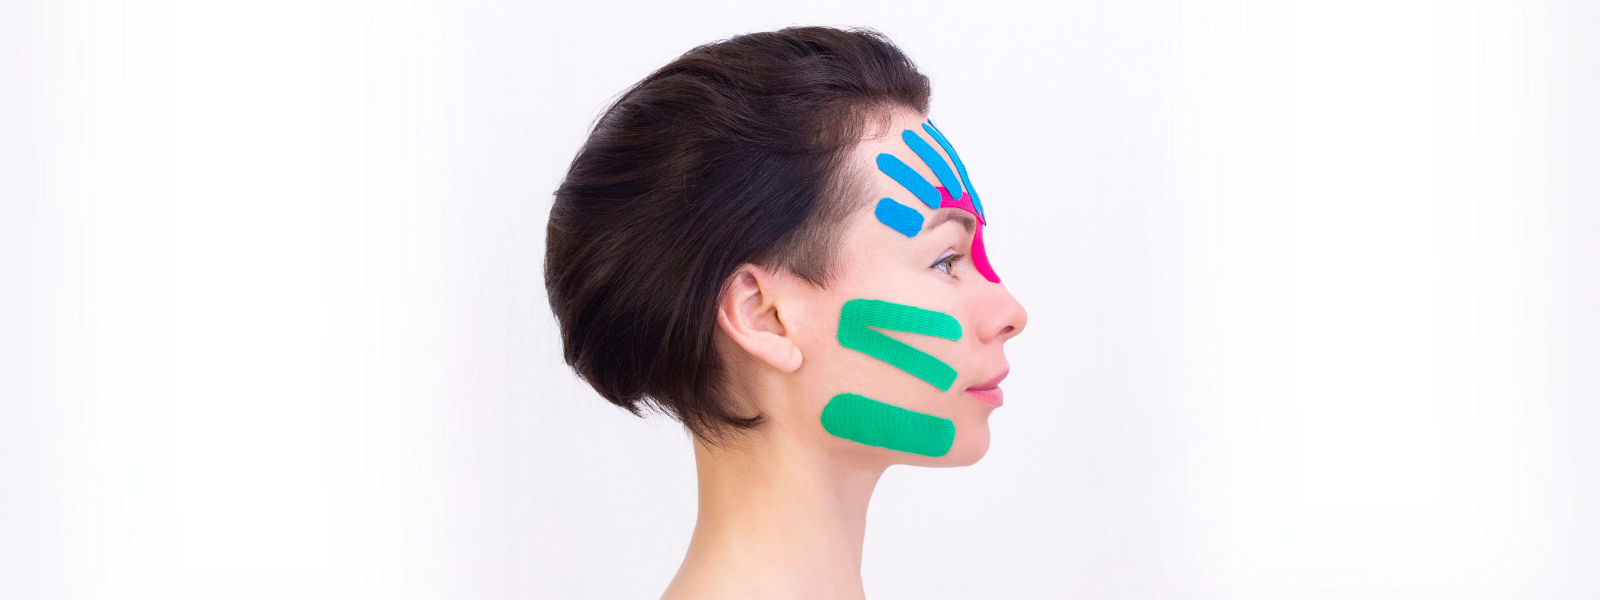 CureTape® Beauty Tape - FaceTaping, Natuurlijke Face Lift